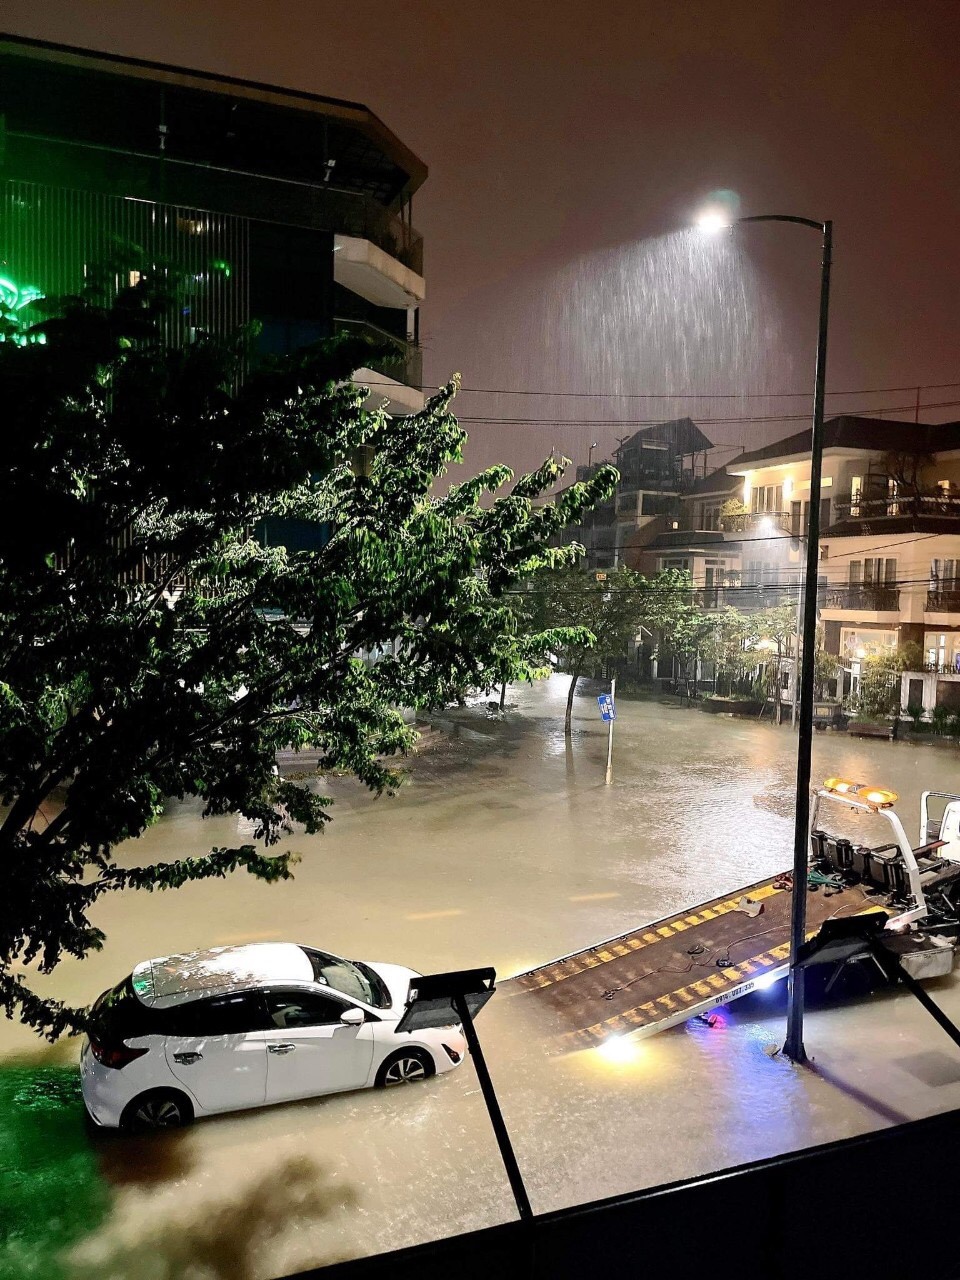 Khu vực chung cư Vicoland, phường Xuân Phú nhiều ô tô bị ngập phải điện cứu hộ xe